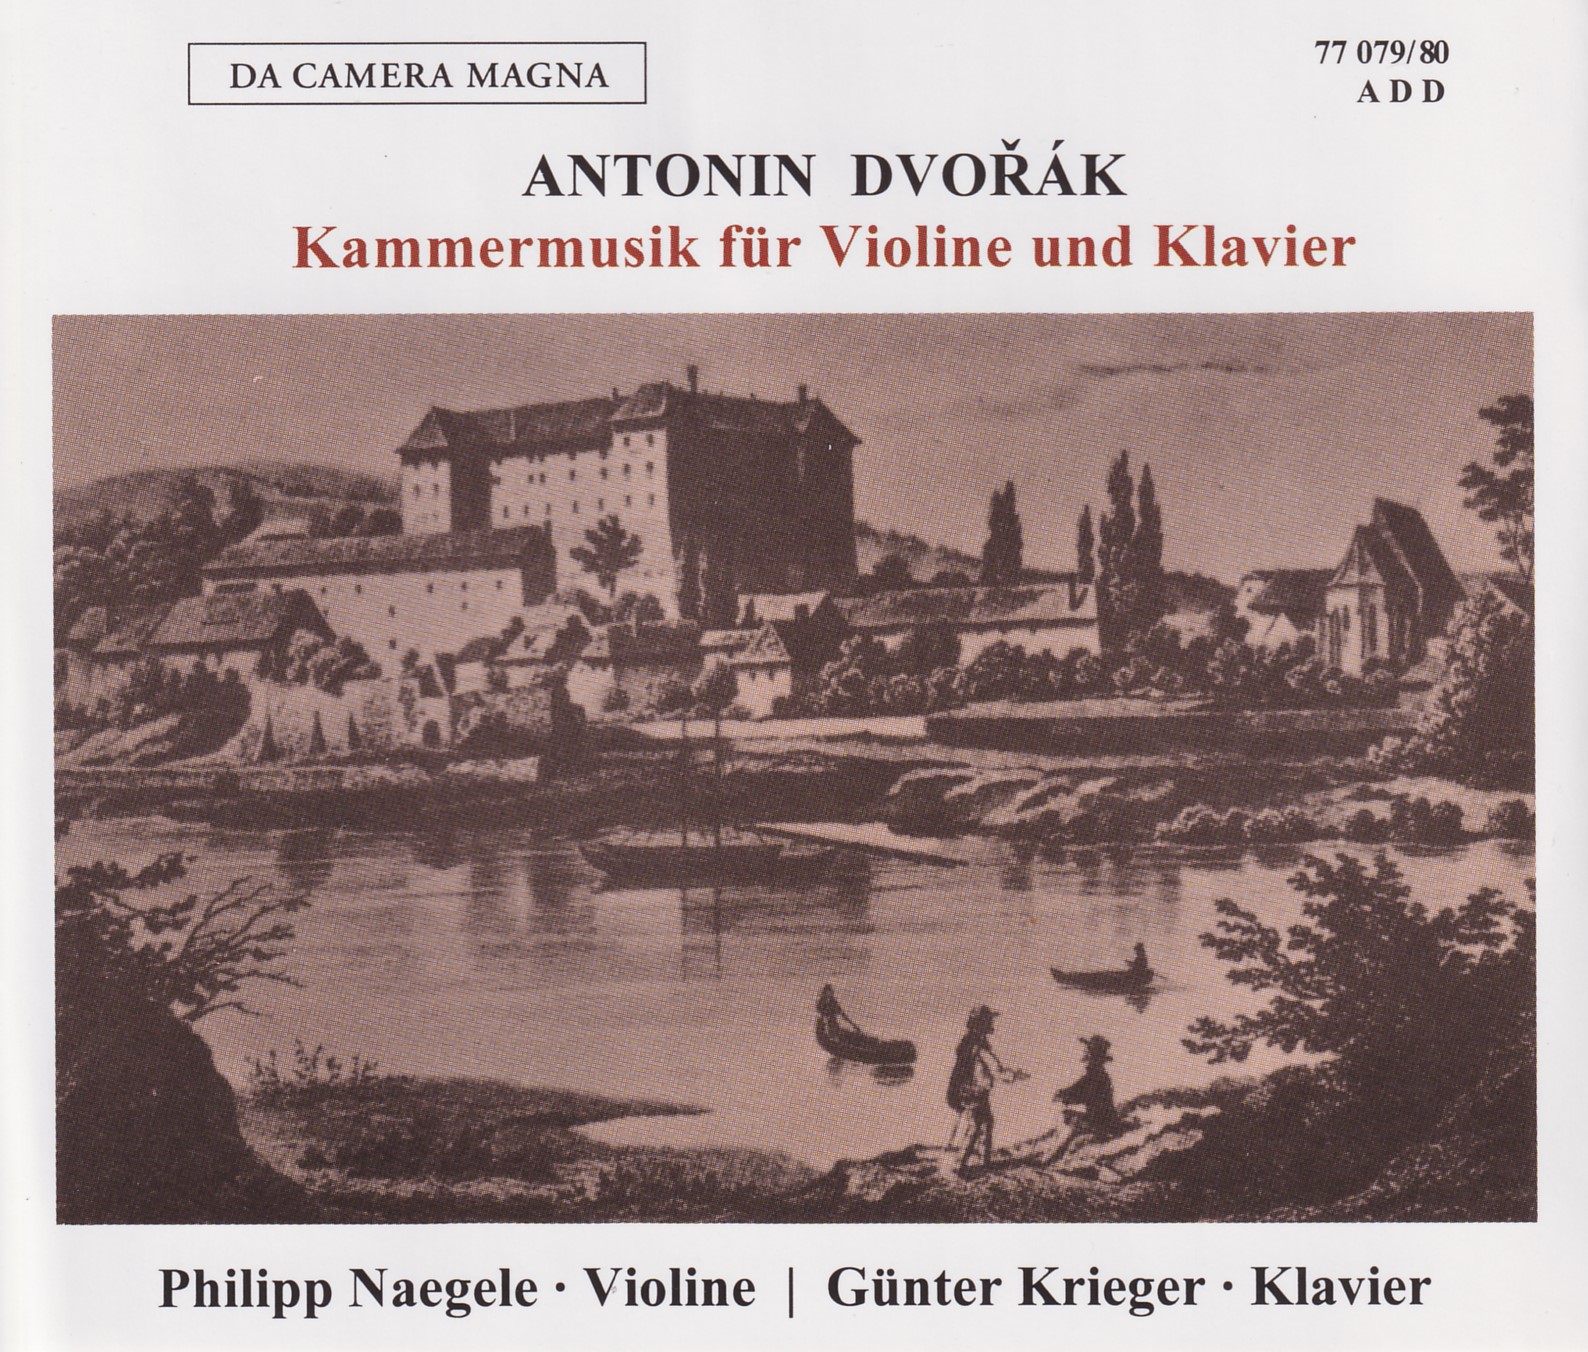 Antonin Dvorak - Kammermusik für Violine und Klavier (Gesamtaufnahme)